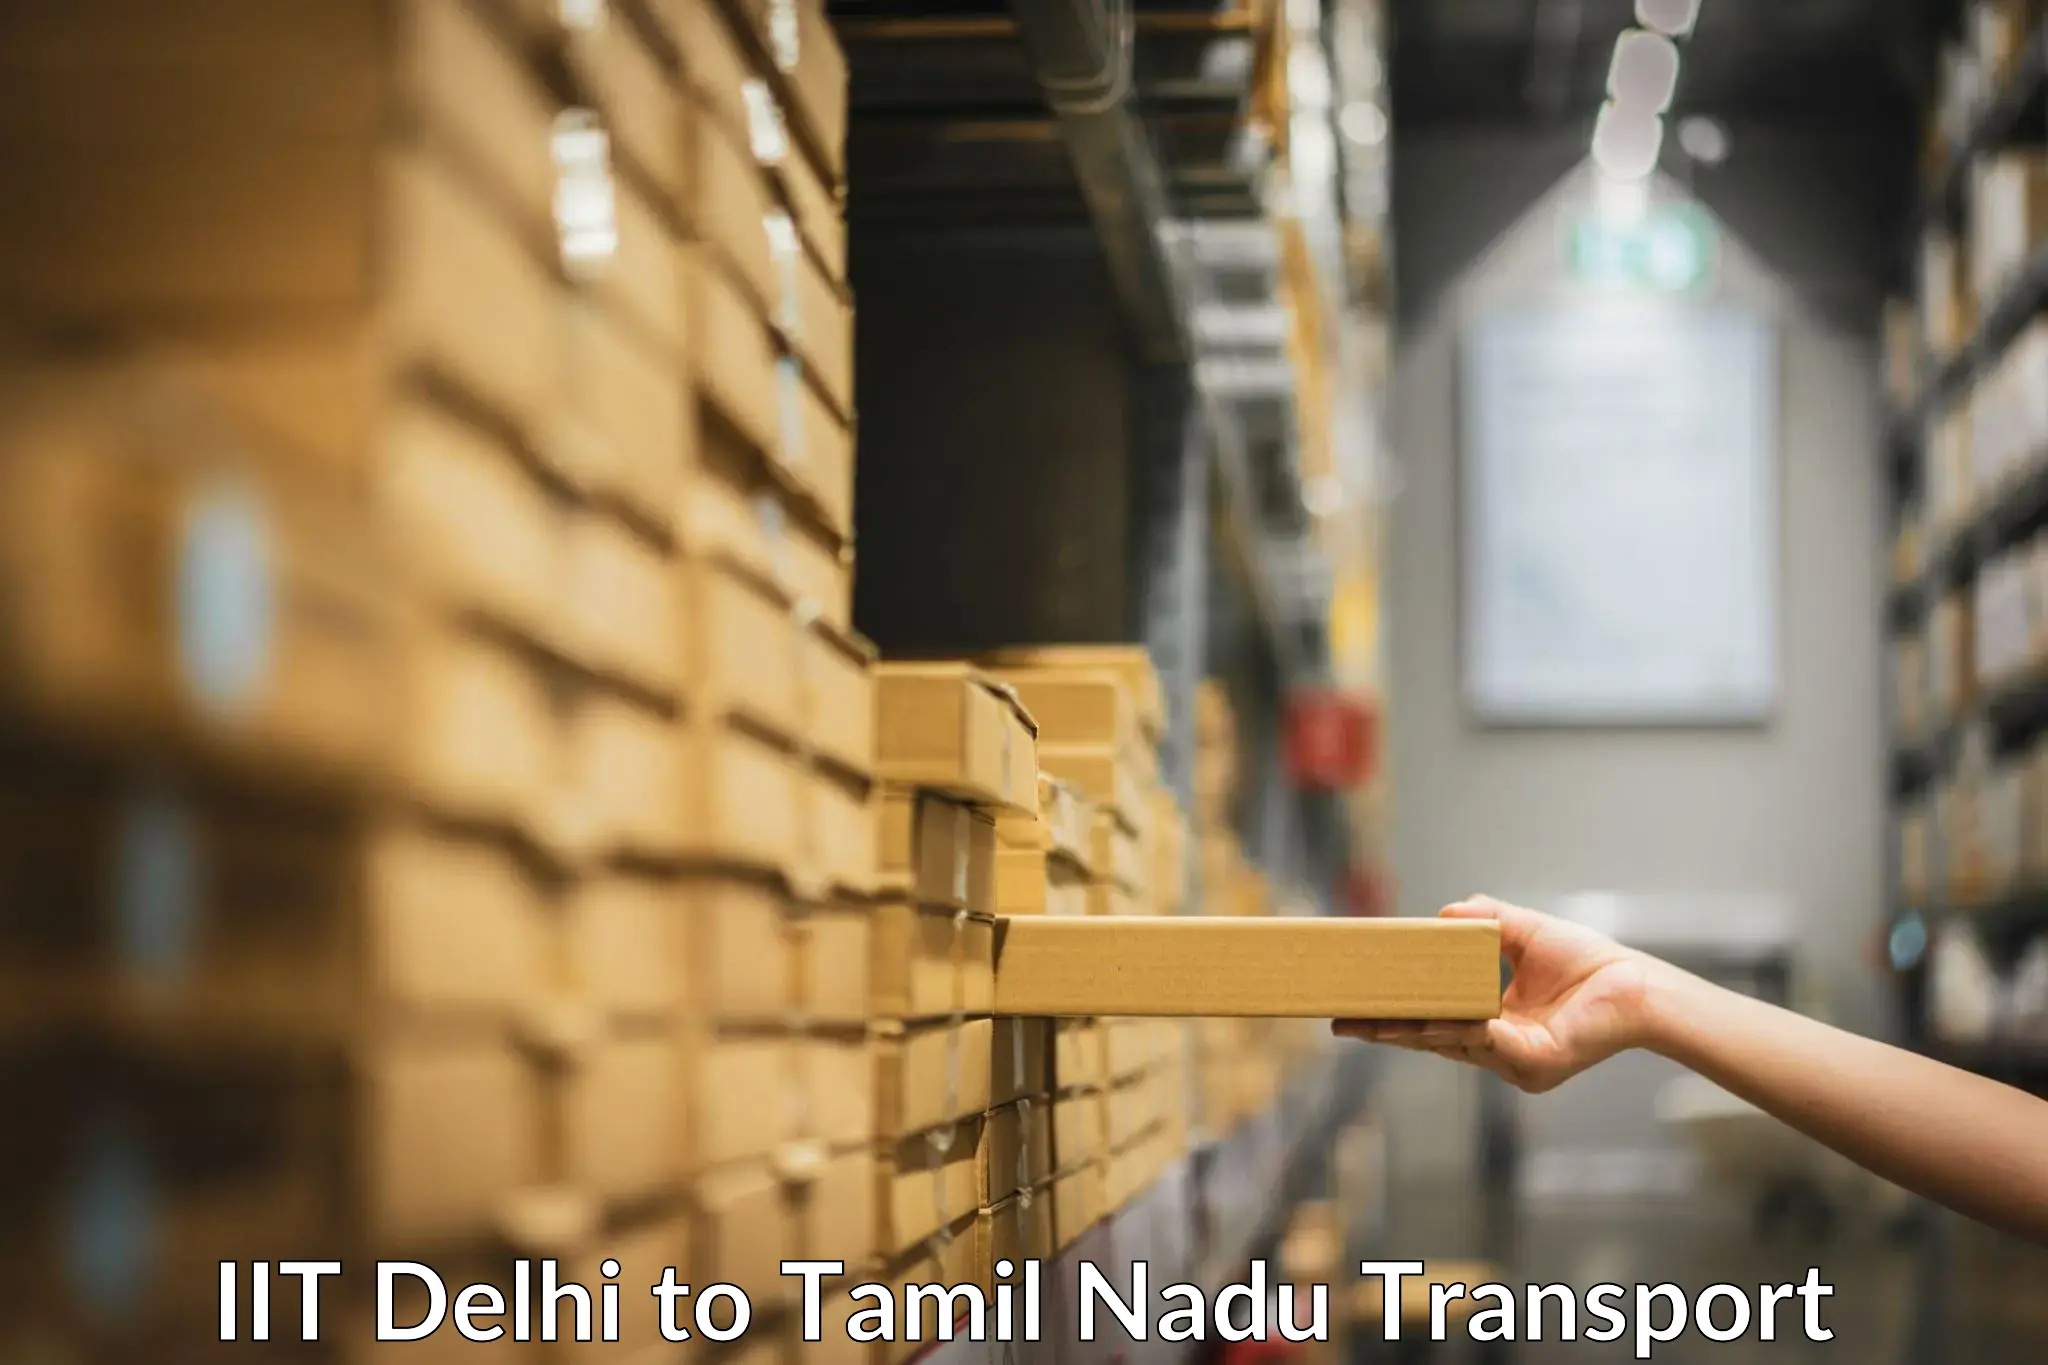 Lorry transport service IIT Delhi to Kodaikanal